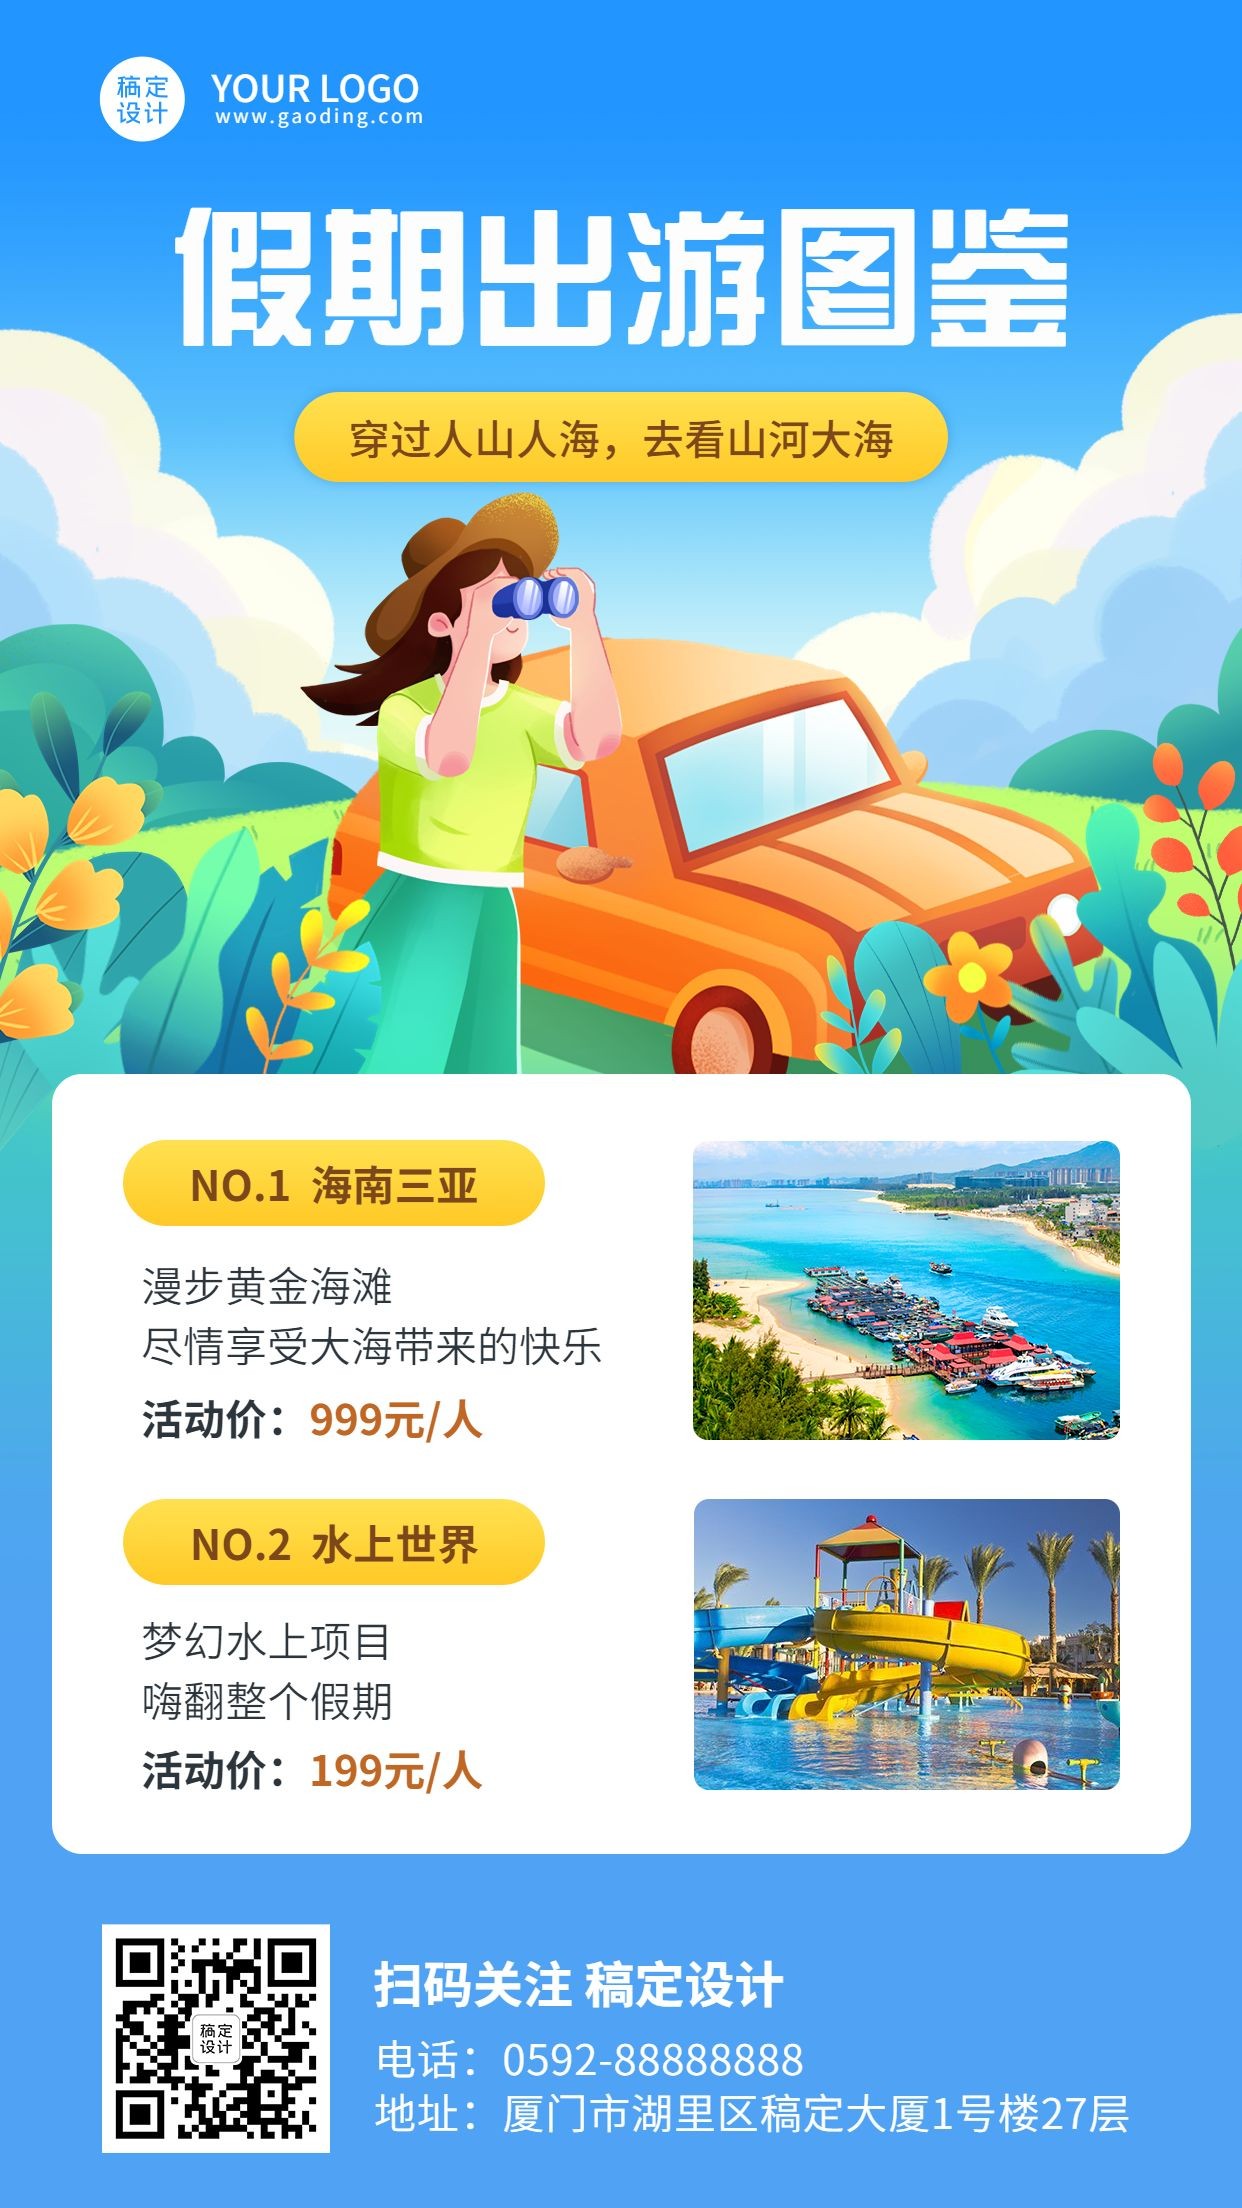 旅游出行三亚假期活动营销插画手机海报